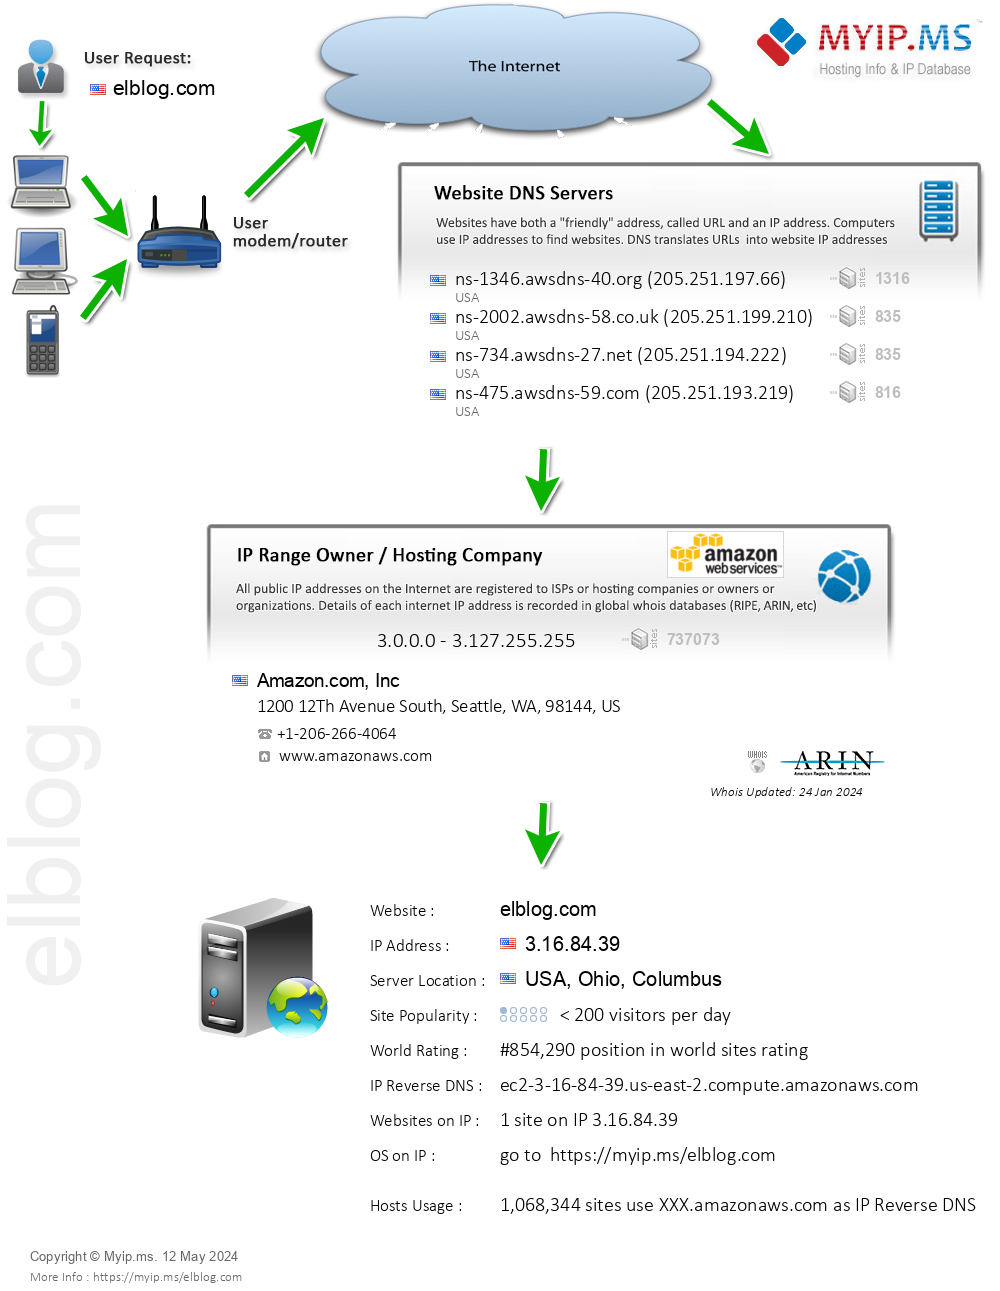 Elblog.com - Website Hosting Visual IP Diagram